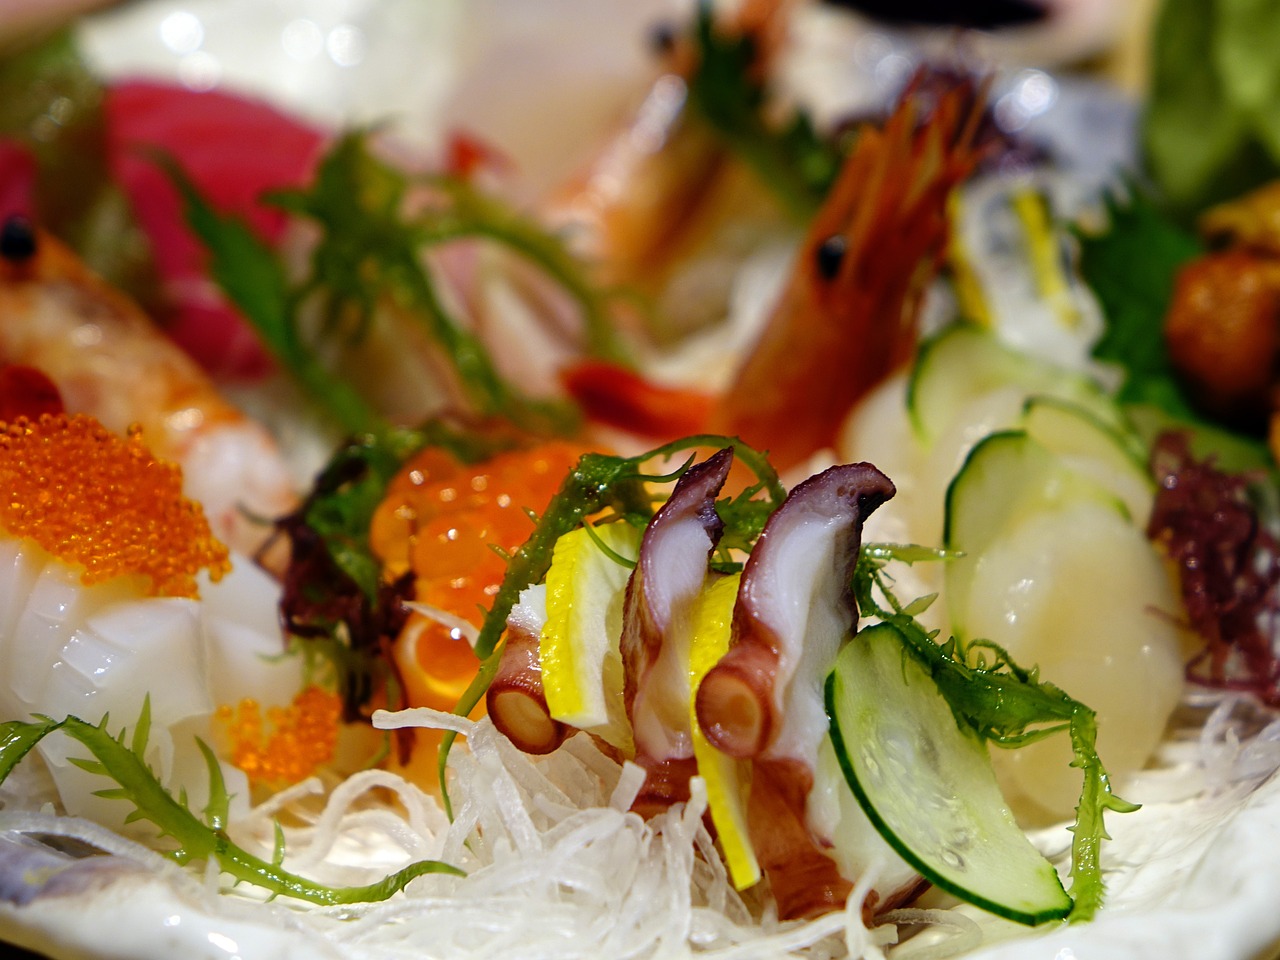 طبق ساشيمي من أشهر أكلات اليابان.